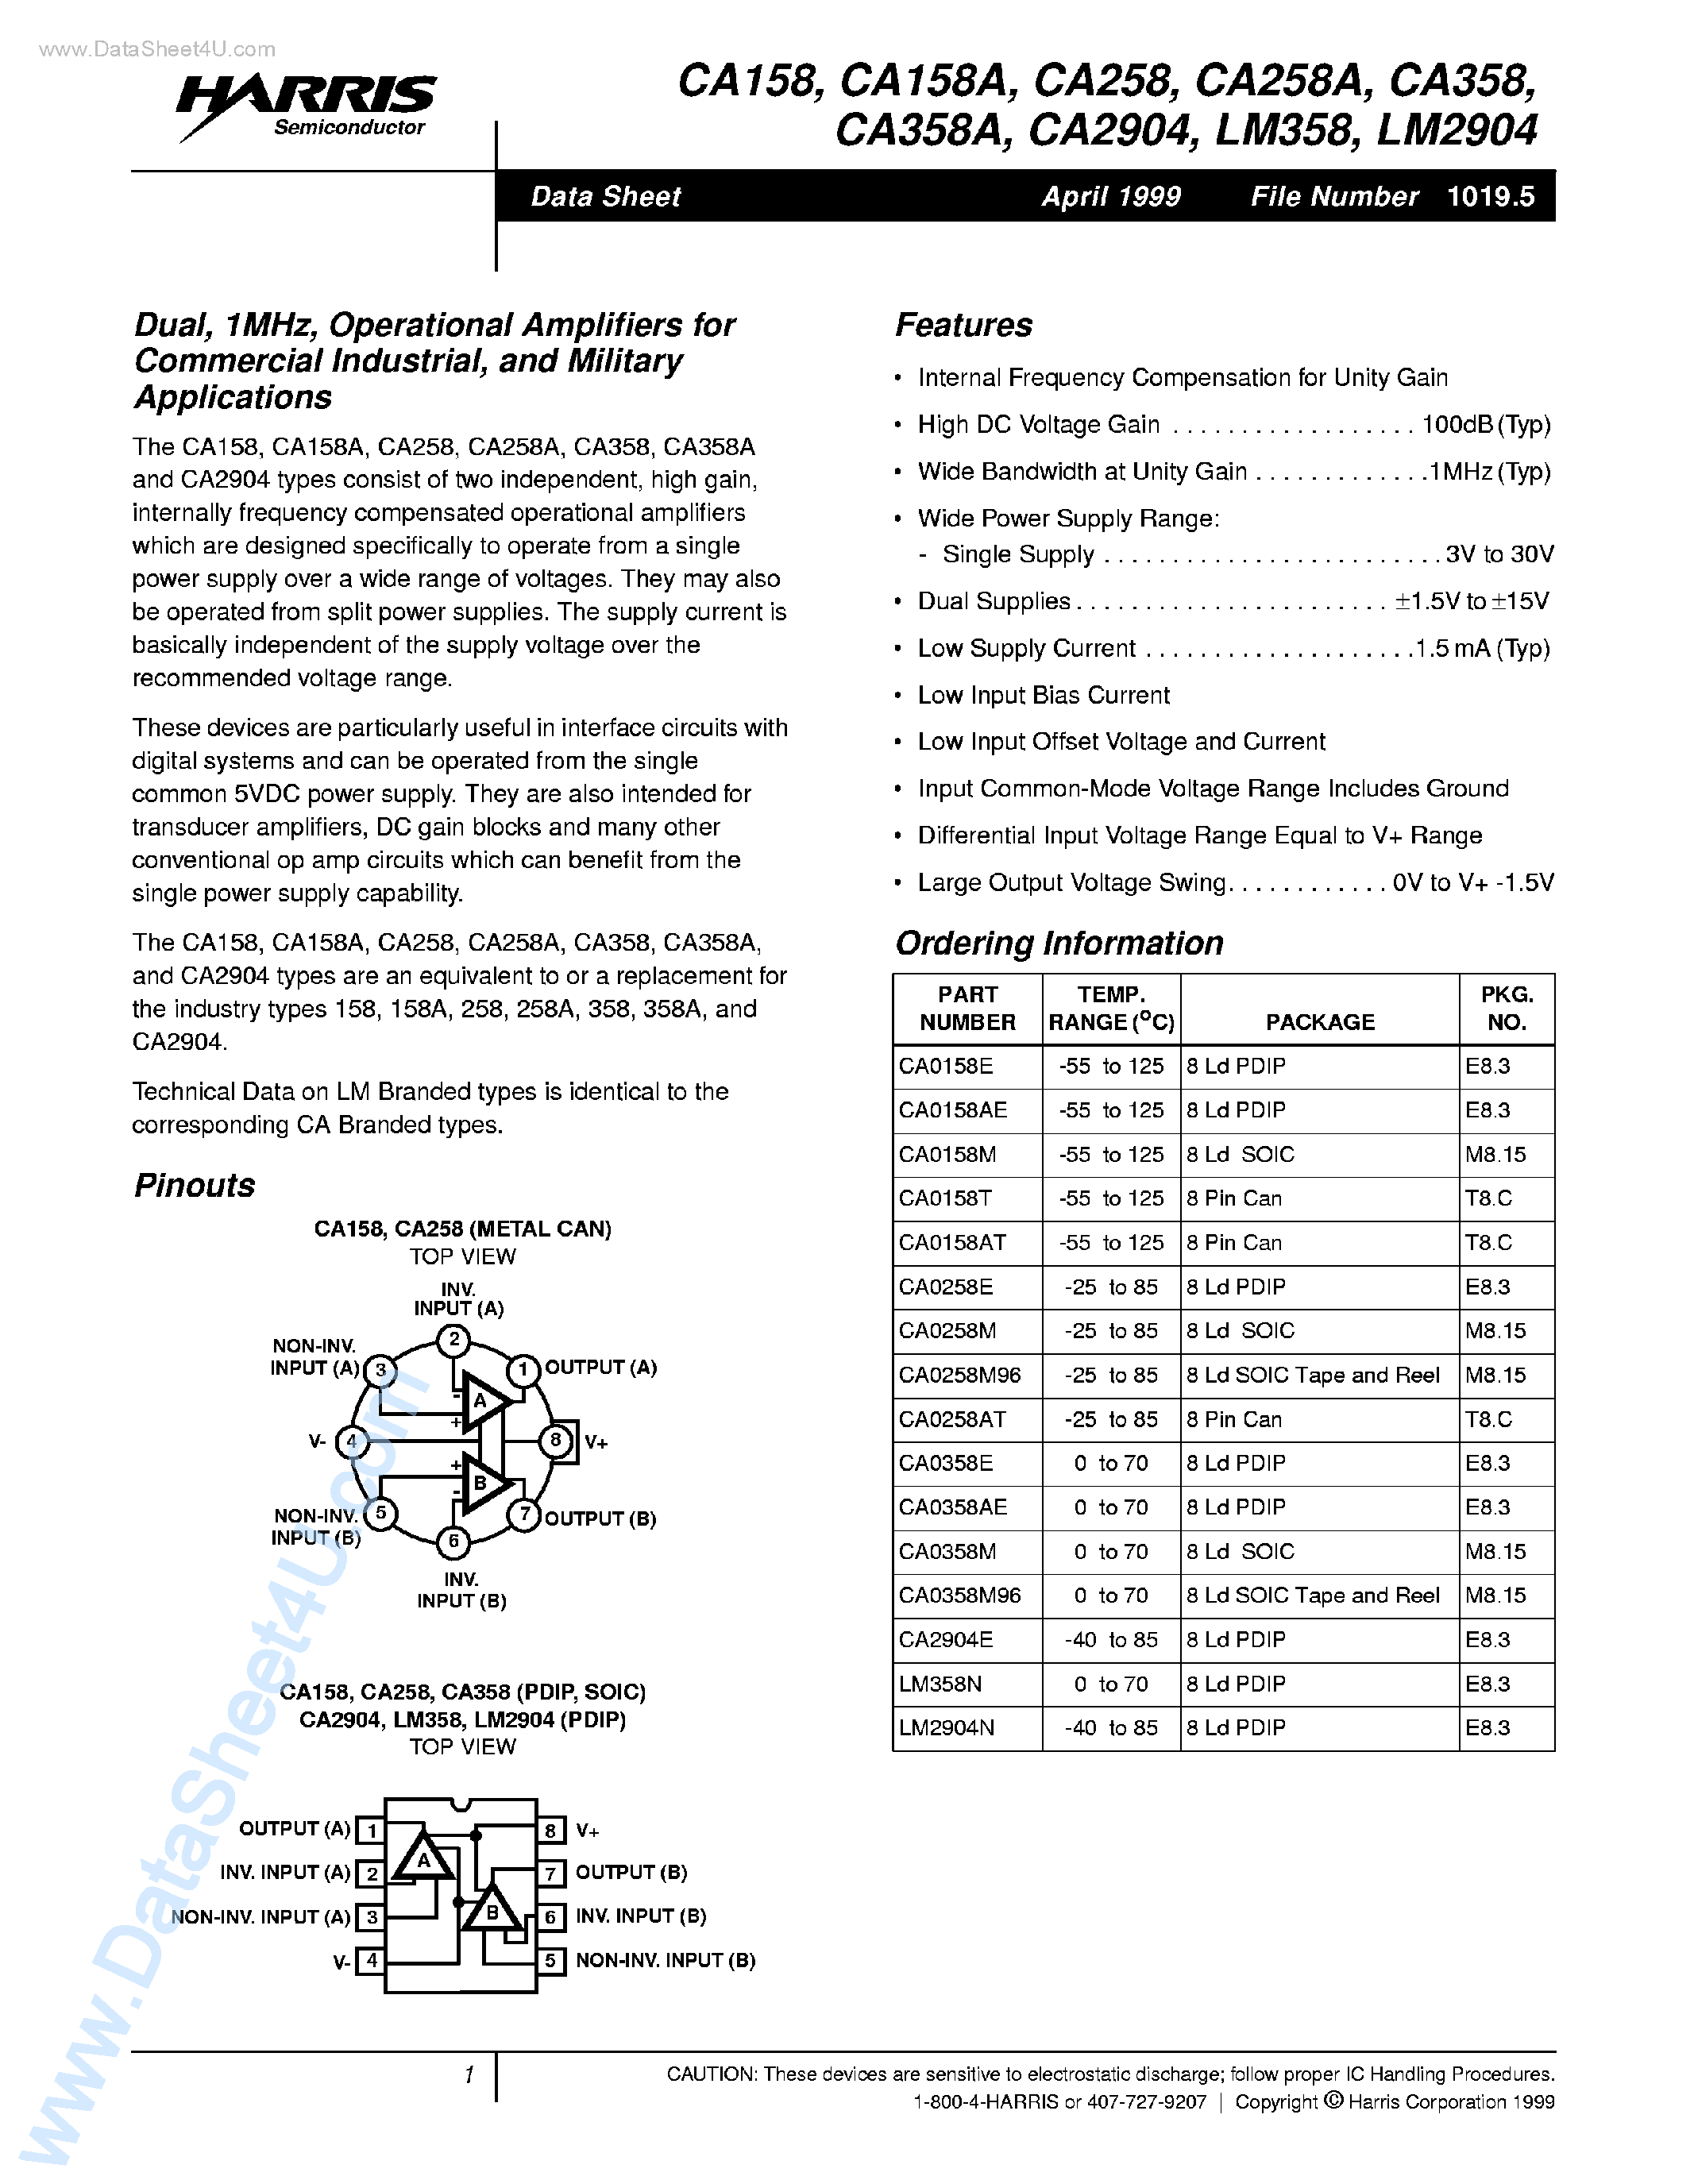 Даташит CA258-(CA258A / CA258 / CA2904) Operational Amplifiers страница 1